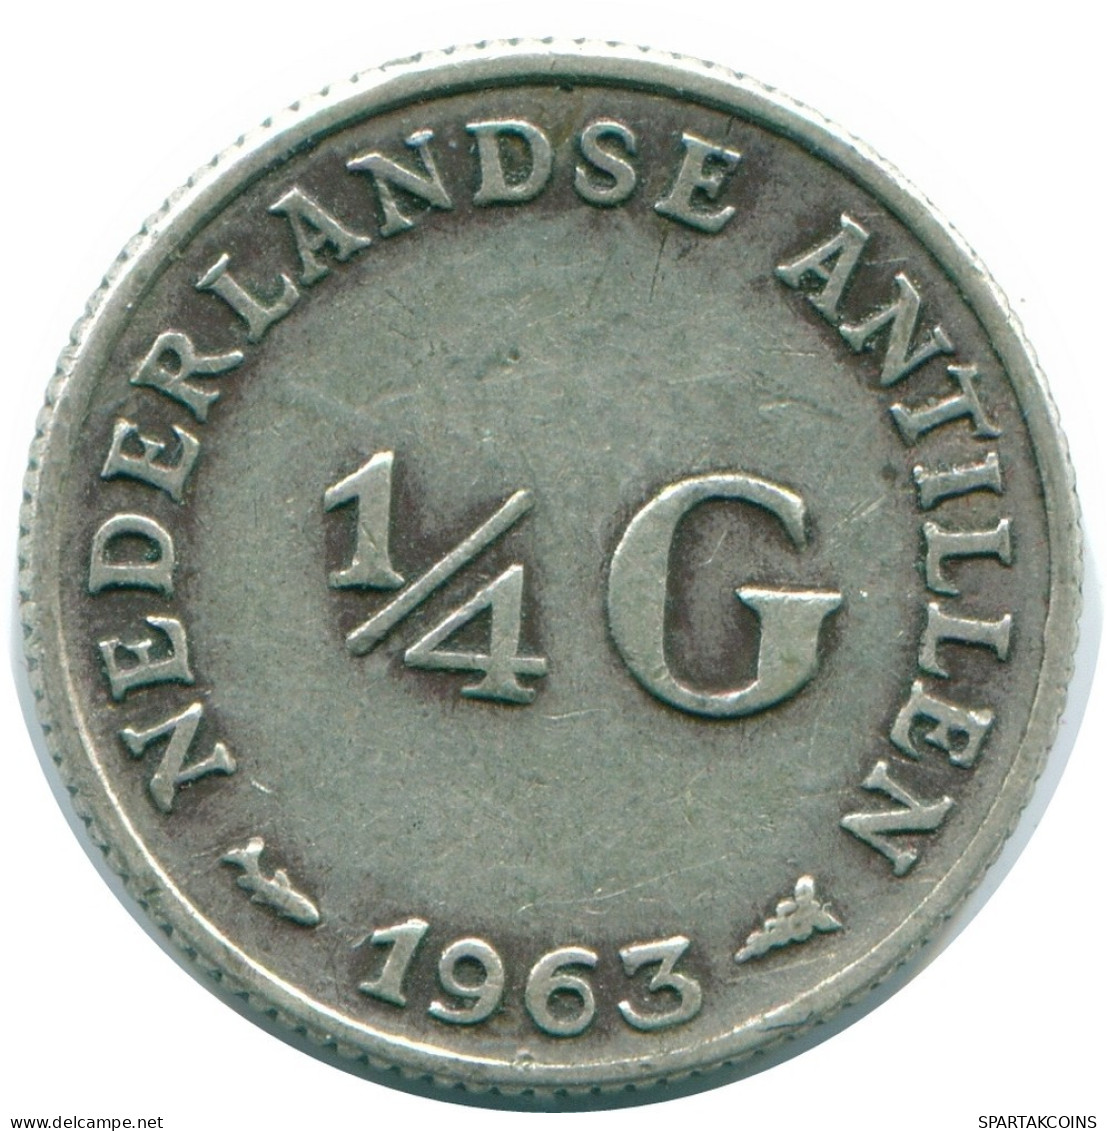 1/4 GULDEN 1963 NIEDERLÄNDISCHE ANTILLEN SILBER Koloniale Münze #NL11261.4.D.A - Niederländische Antillen